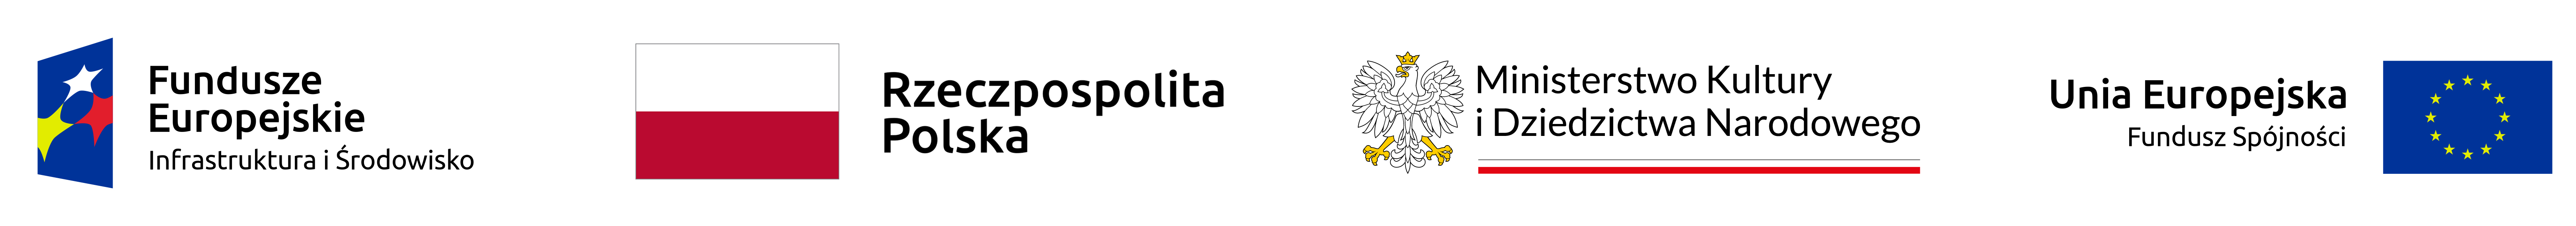 baner z logo Funduszy Europejskich, Rzeczpospolitej Polskiej, Ministerstwa Kultury i Dziedzictwa Narodowego, Unii Europejskiej